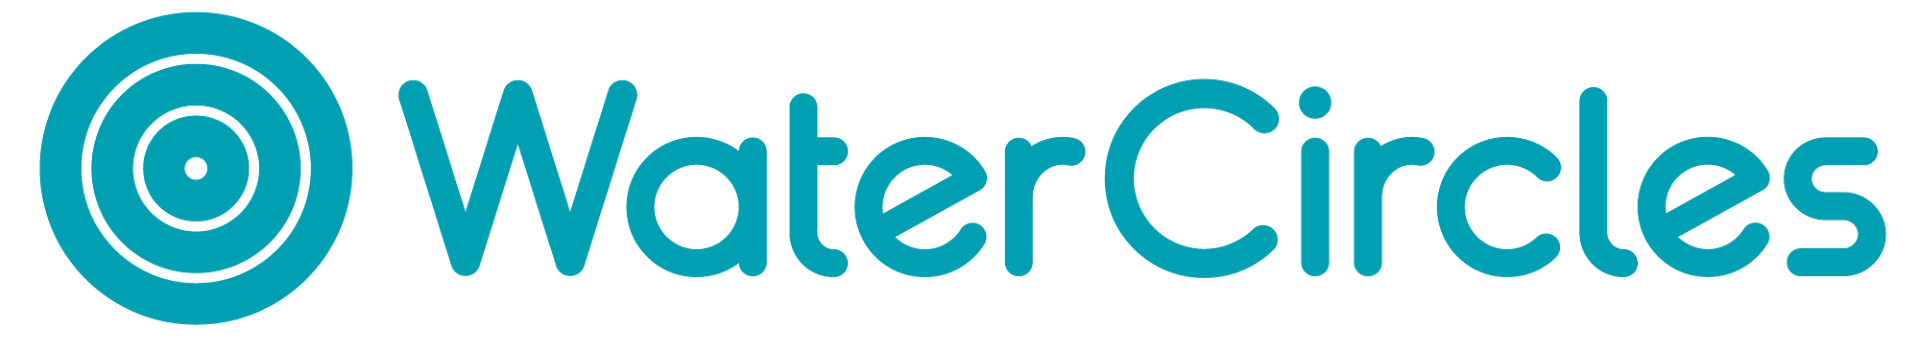 Watercircles logotyp